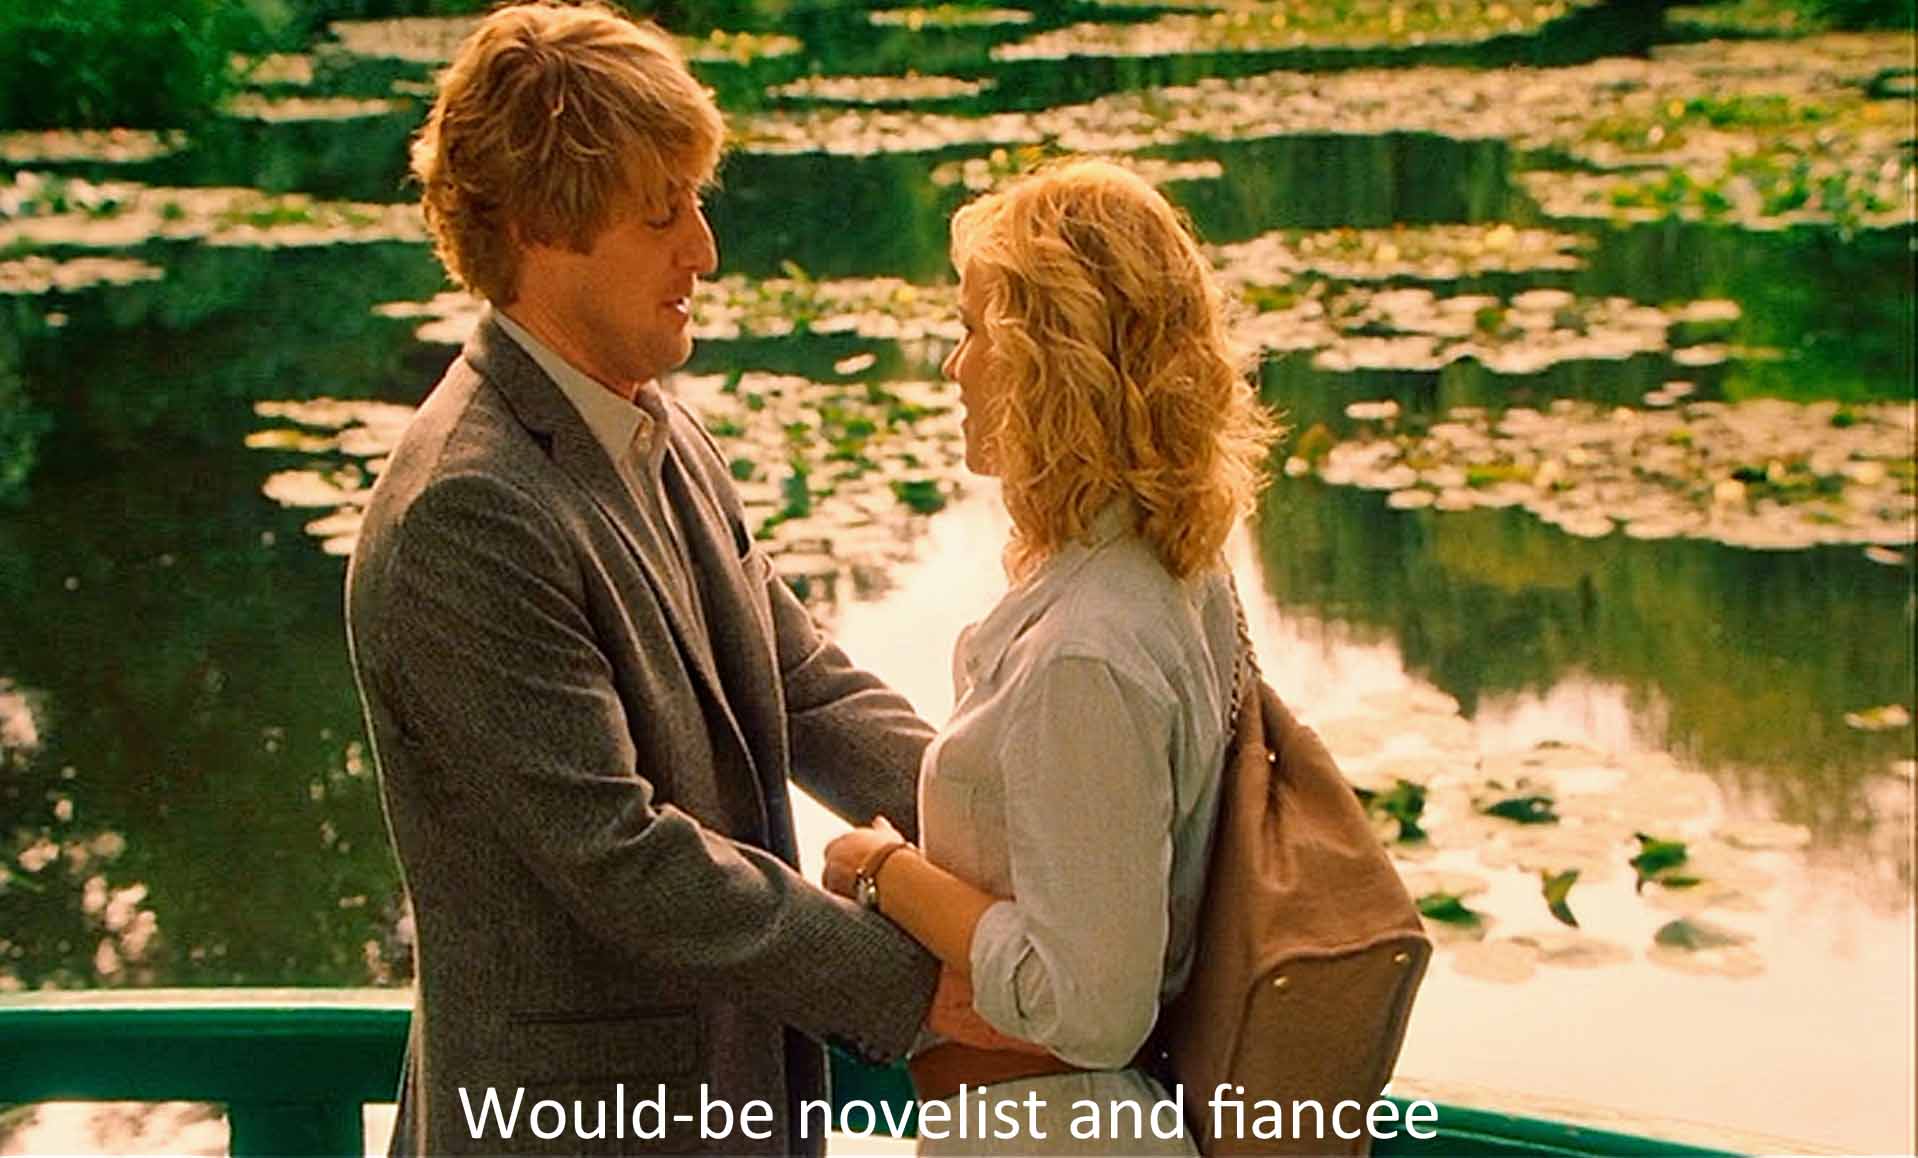 Would-be novelist and fiancee